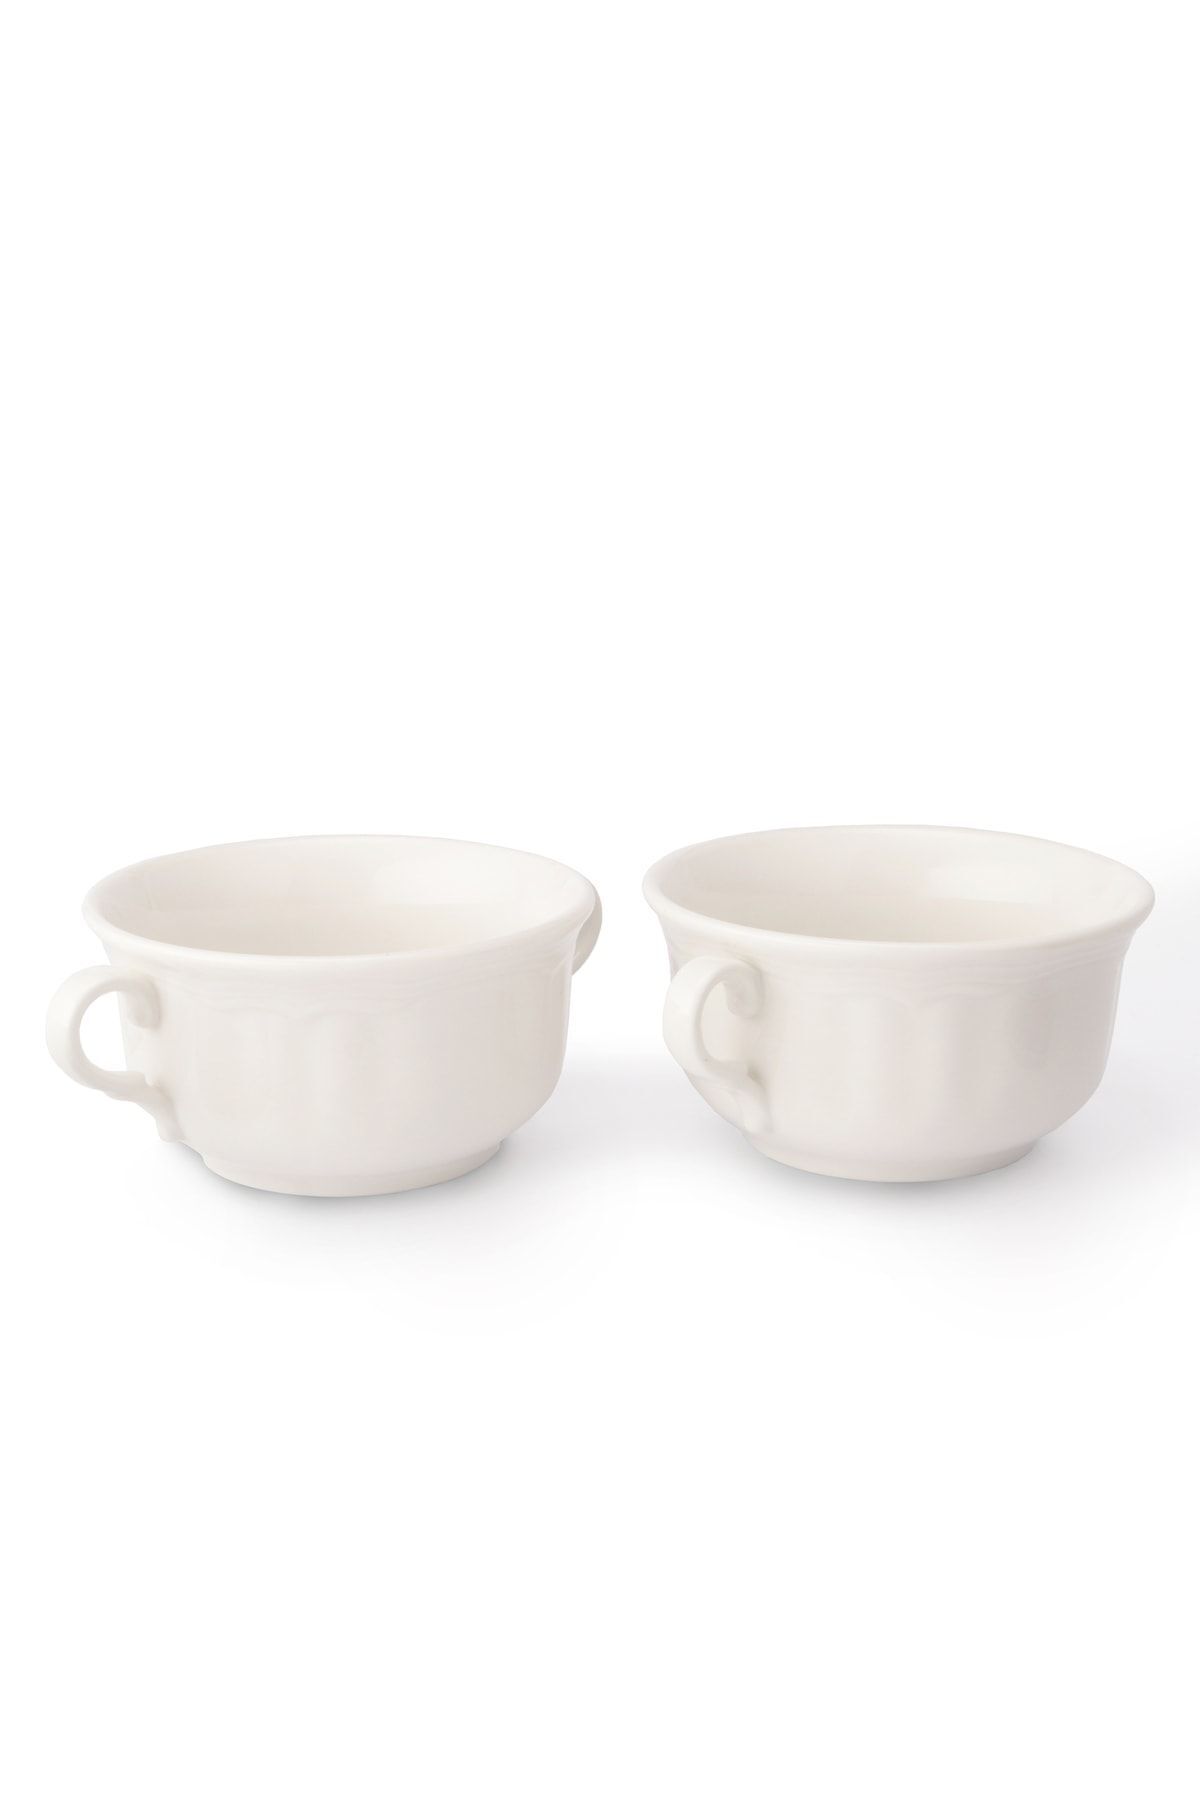 Güral Porselen Çorba Kasesi Çift Kulplu Çorbalık Porselen Çorba Kabı 15 Cm 2 Adet